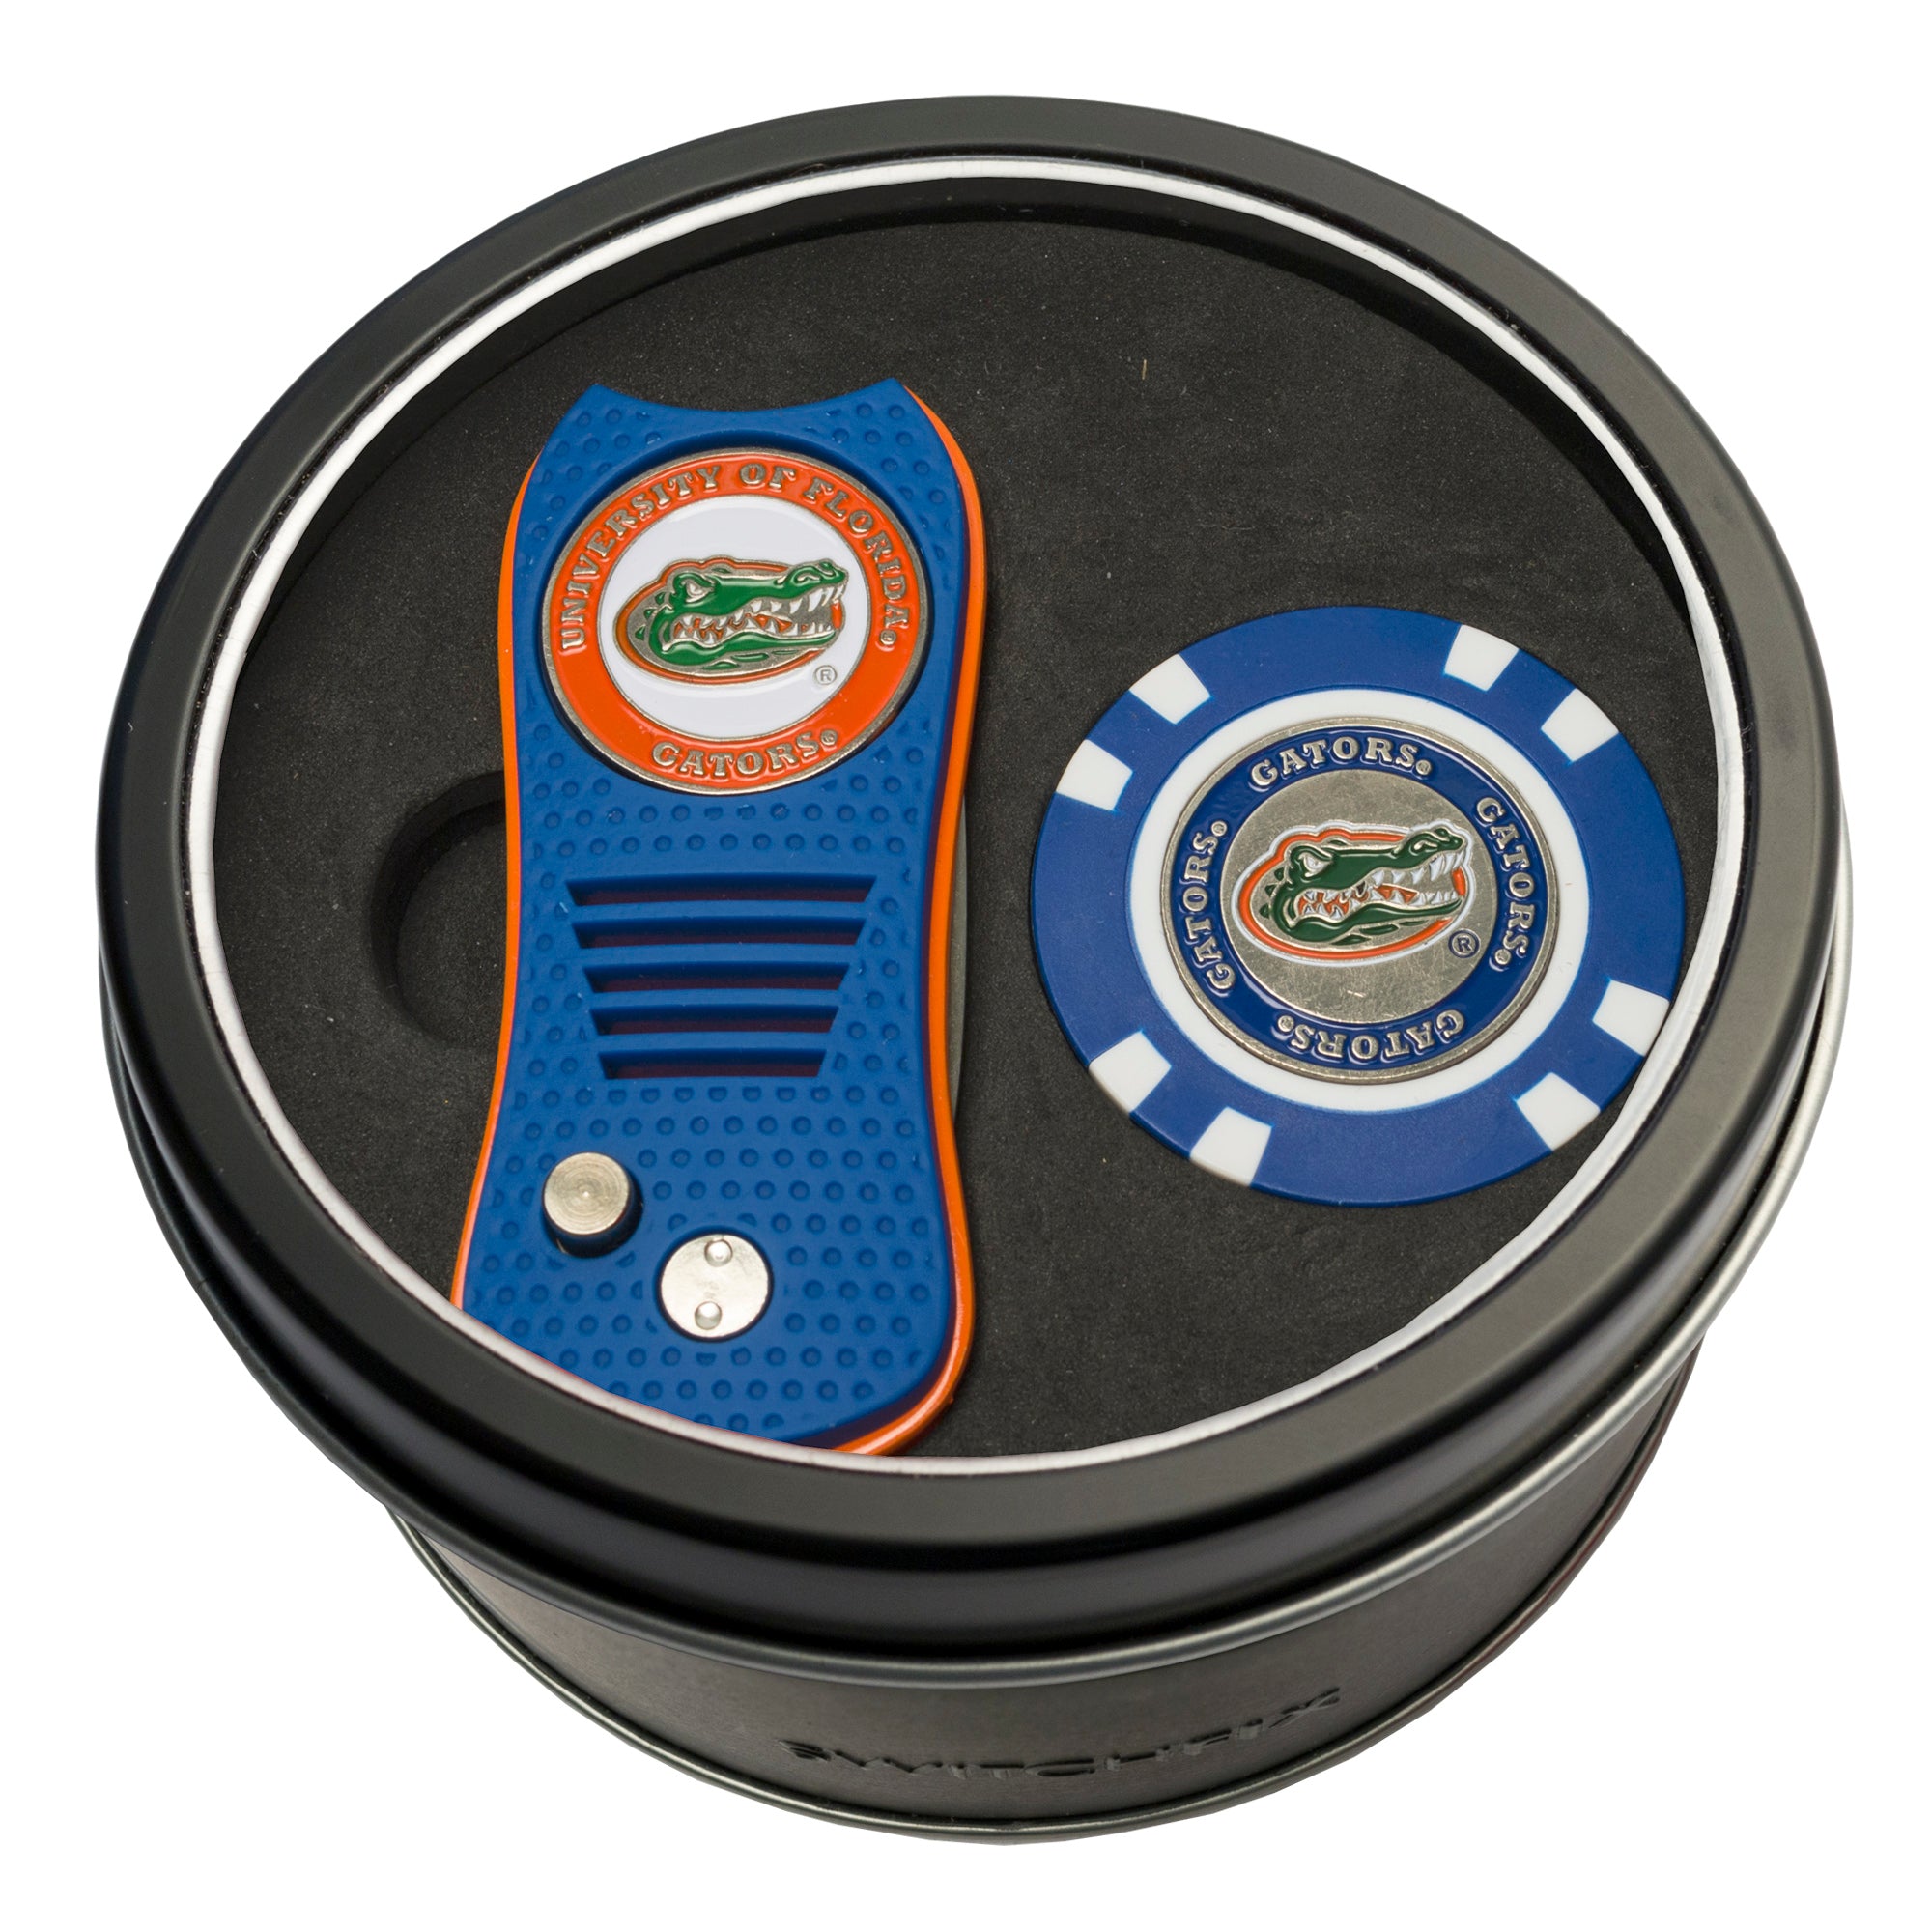 Florida Gators Switchblade Divot Tool + Golf Chip Tin Gift Set